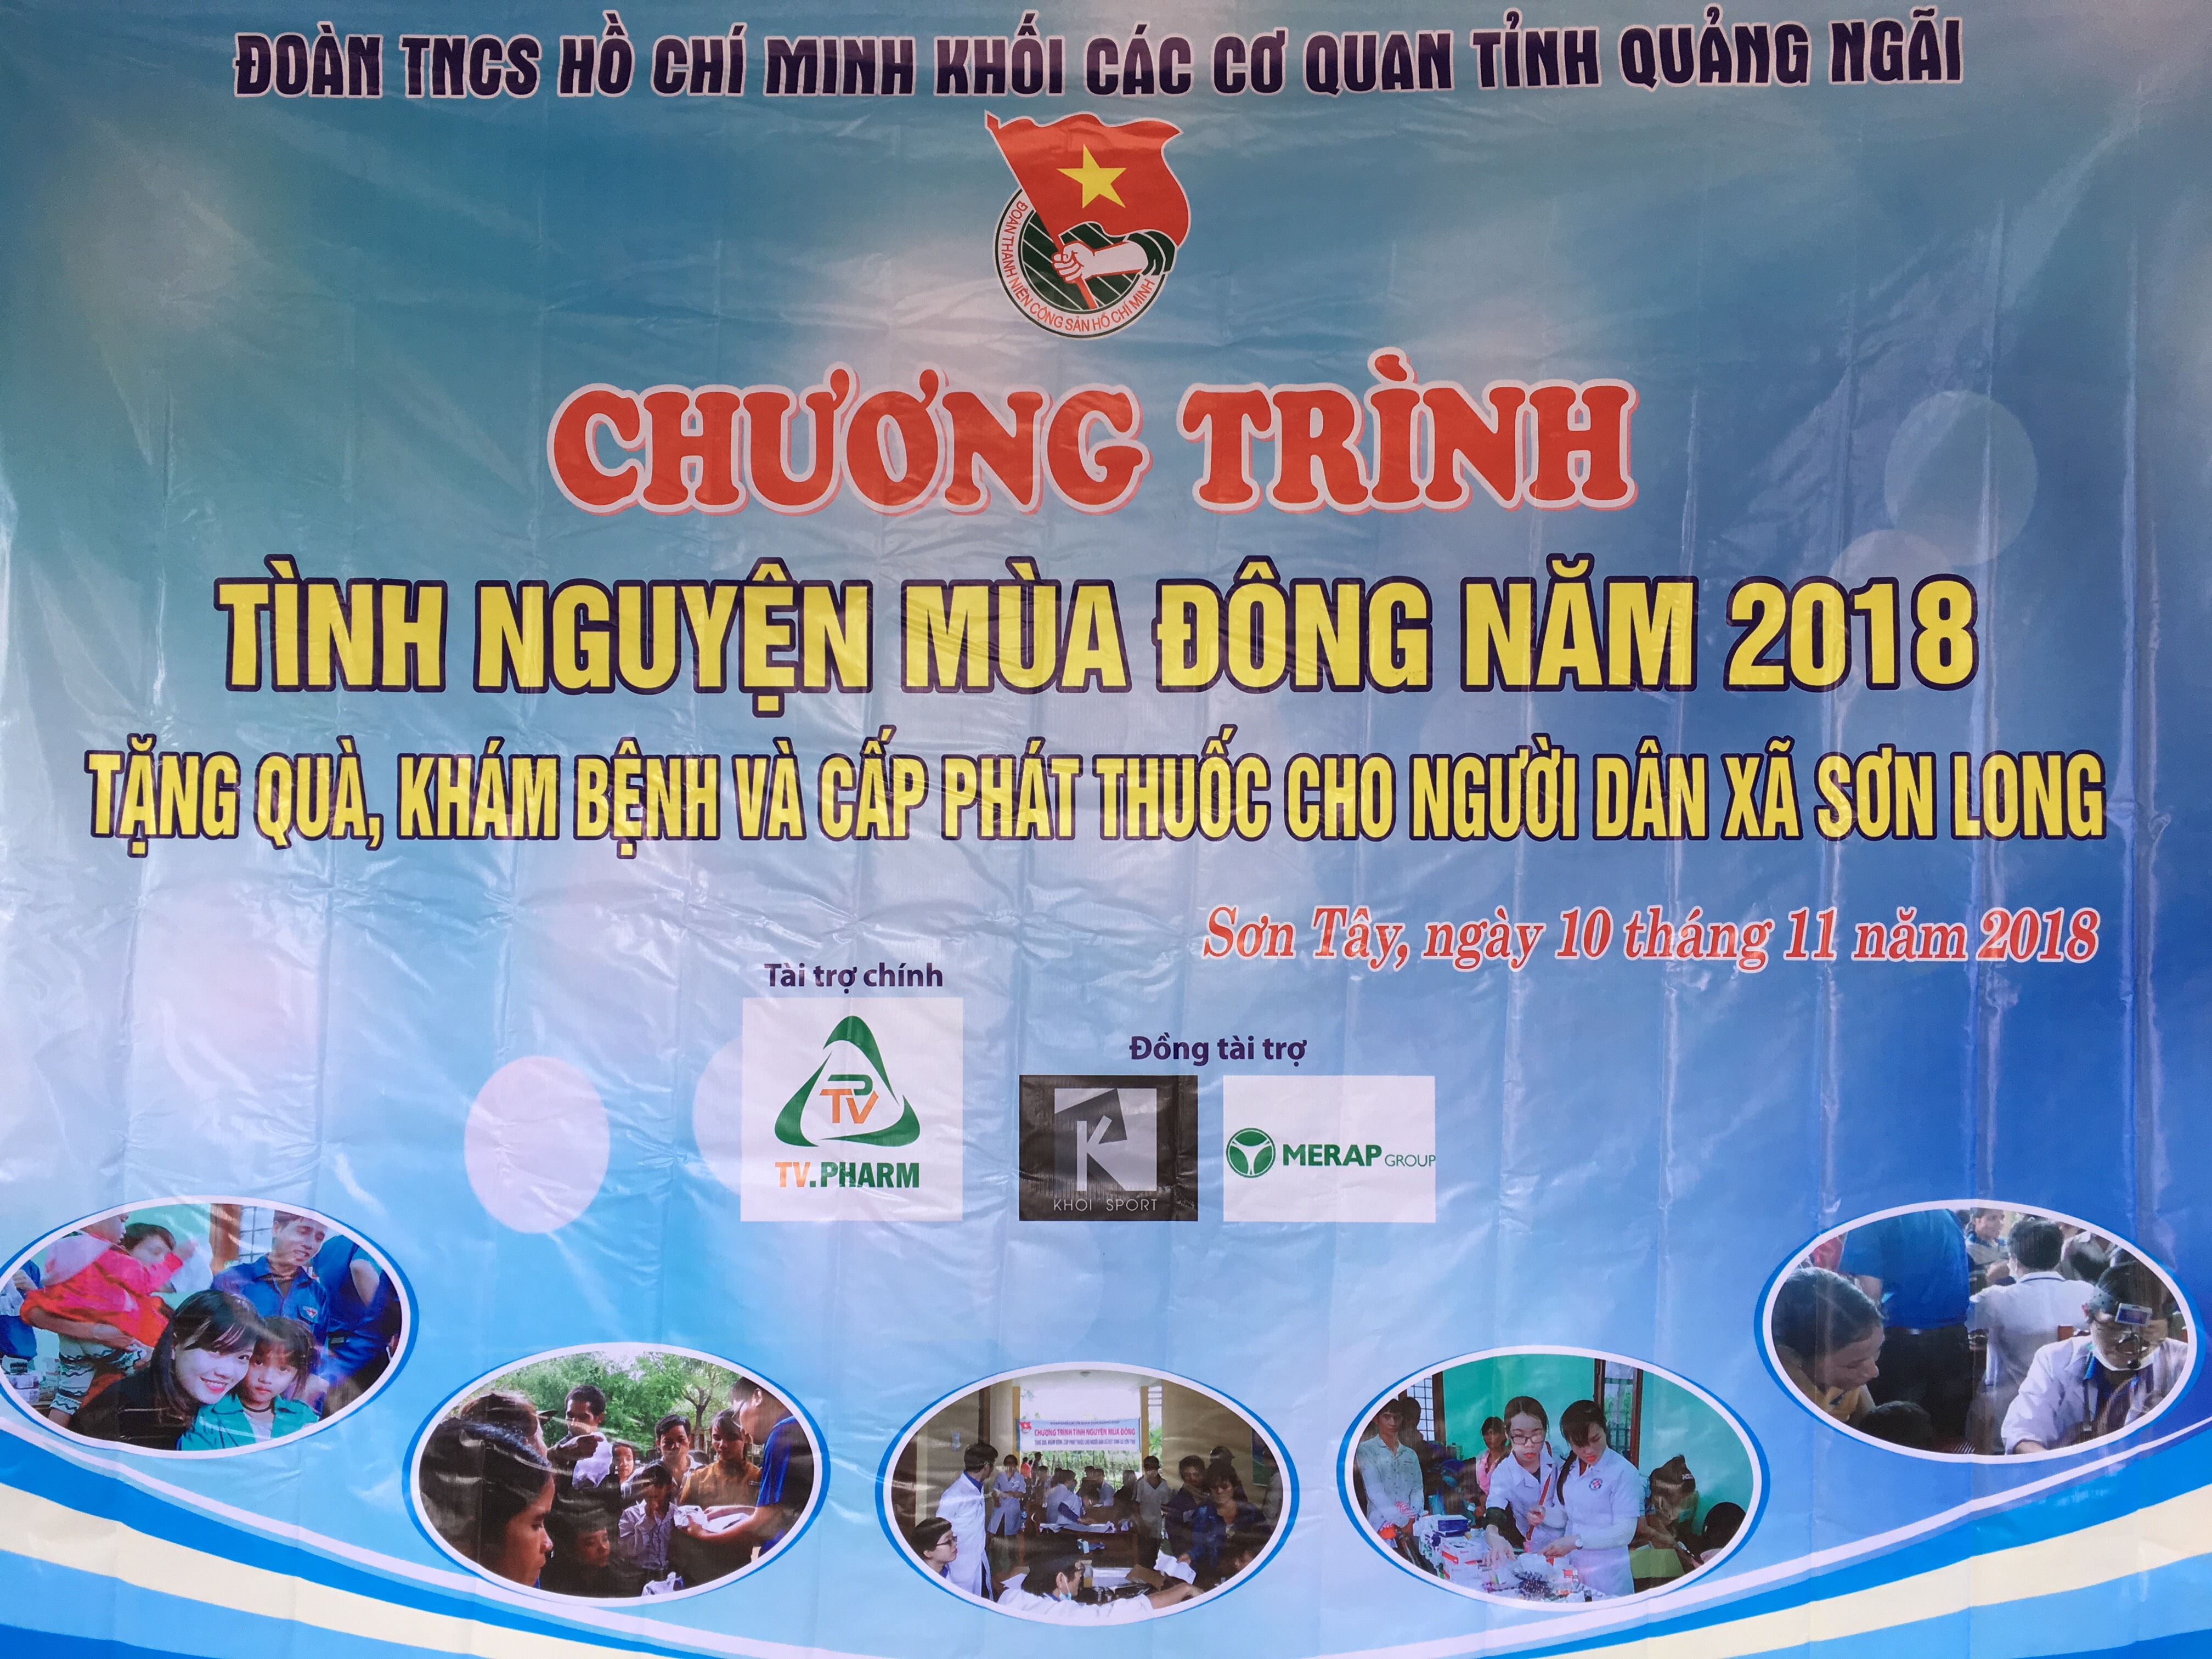 Đoàn Thanh niên KBNN Quảng Ngãi với chương trình 